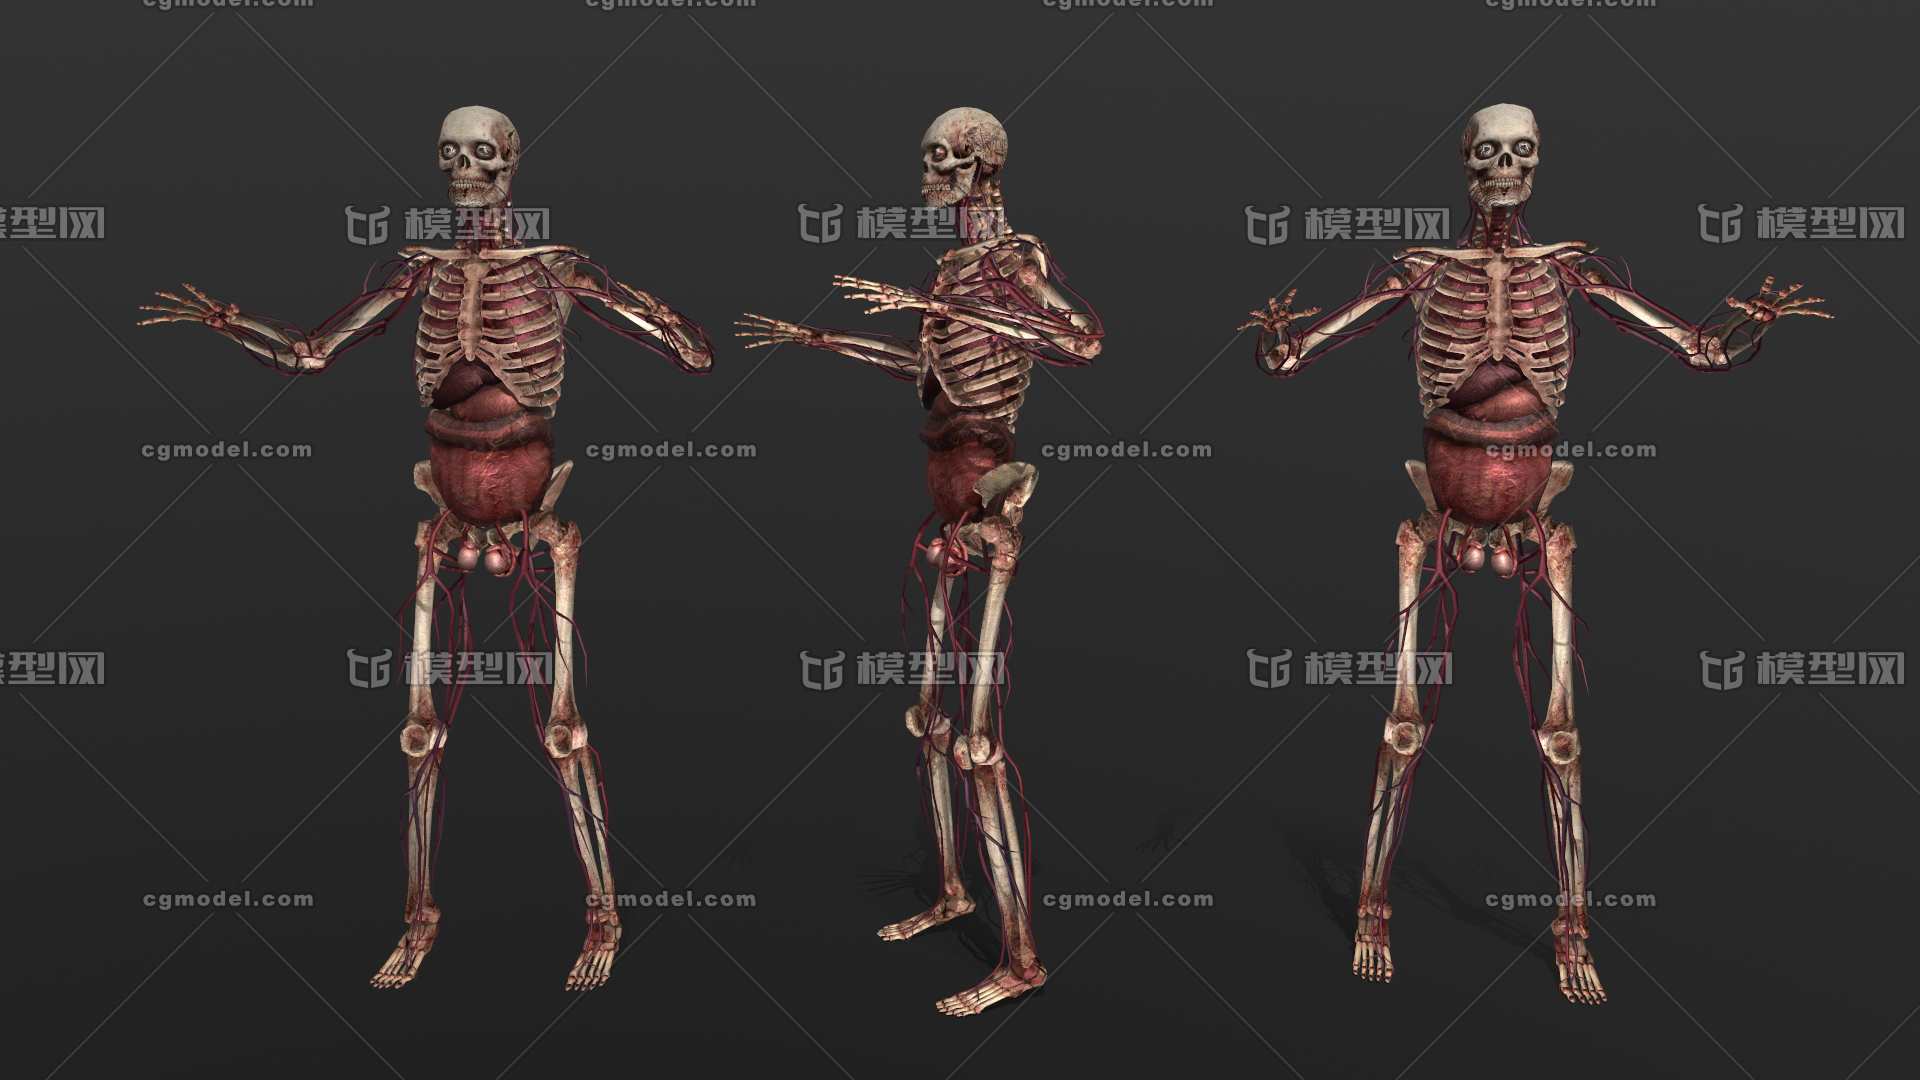 次世代pbr低模人体骨骼简模人体骨骼骨质结构骨骼系统人体解剖骷髅模医学模型骨 Cg模型网 Cgmodel 三维设计师交流互动平台 专注多品类3d模型下载 原创作品分享 软件学习